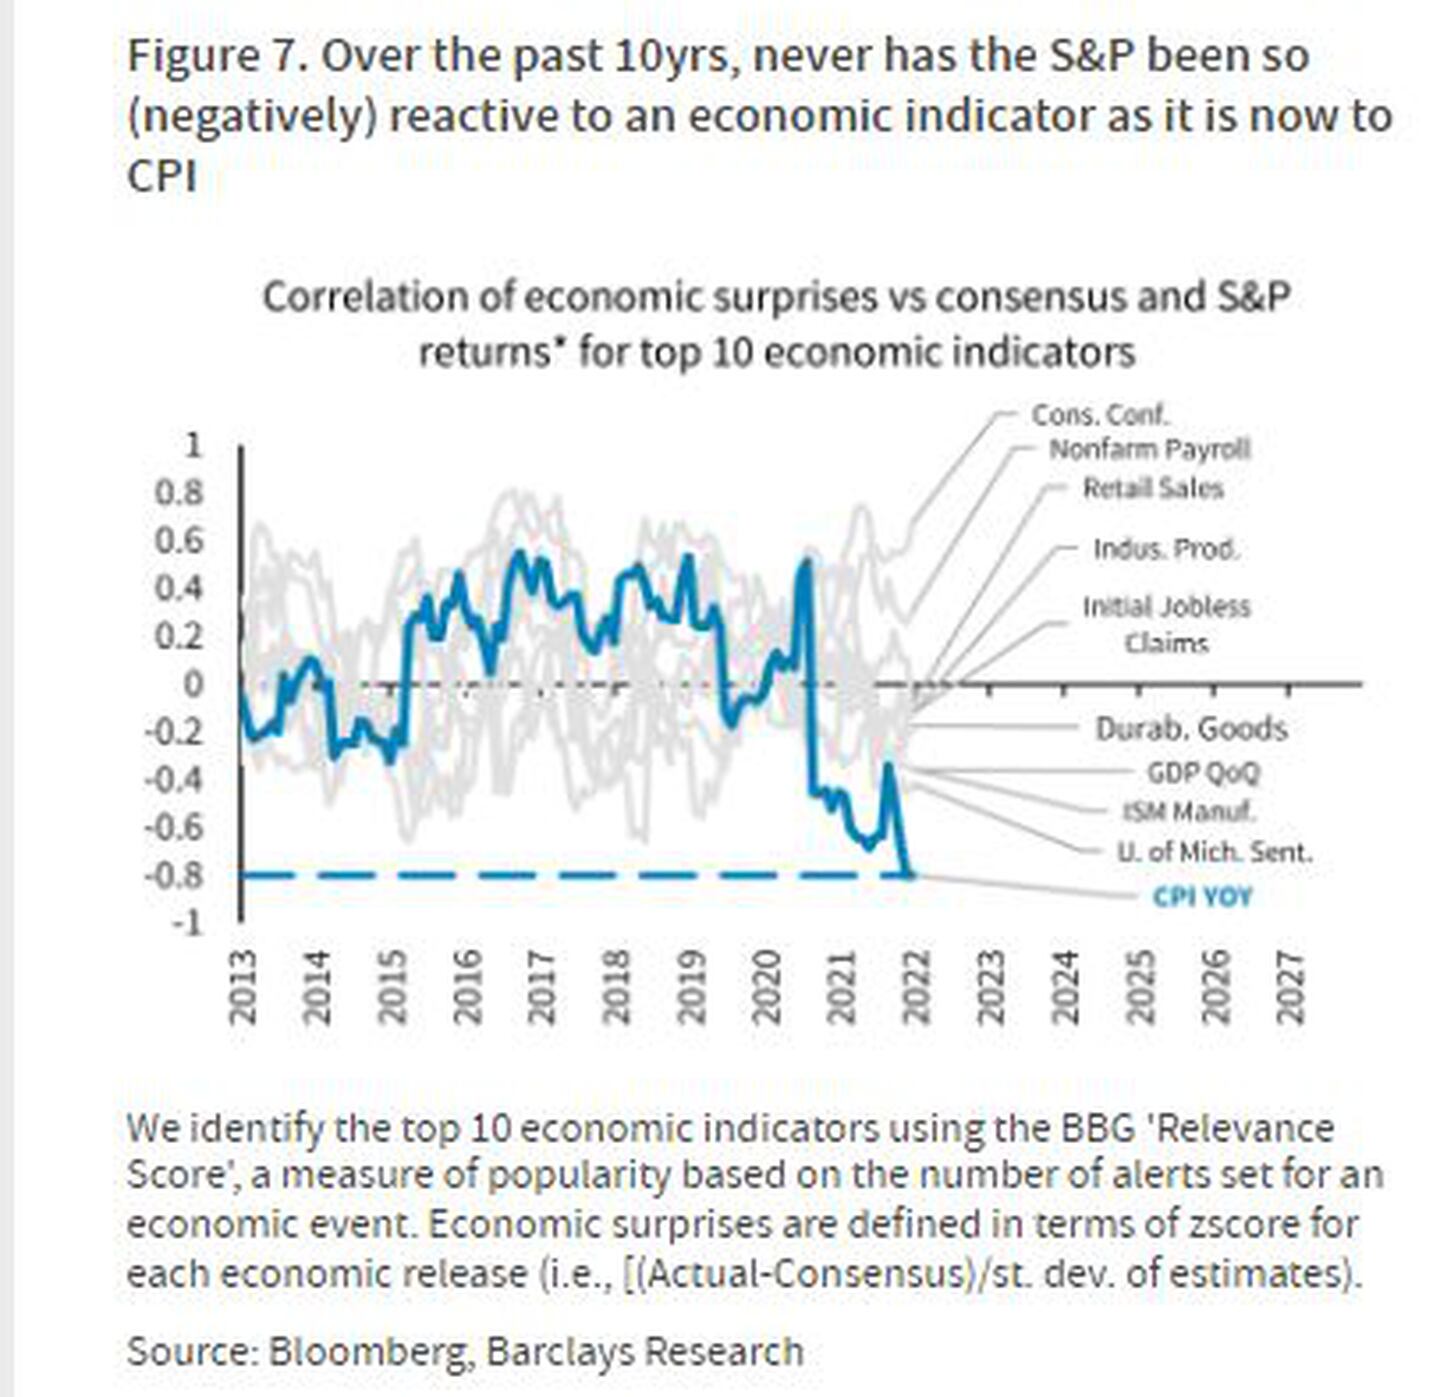 Nunca en los últimos 10 años el S&P 500 reaccionó de manera tan negativa a indicadores económicos como lo hace con el IPC ahoradfd